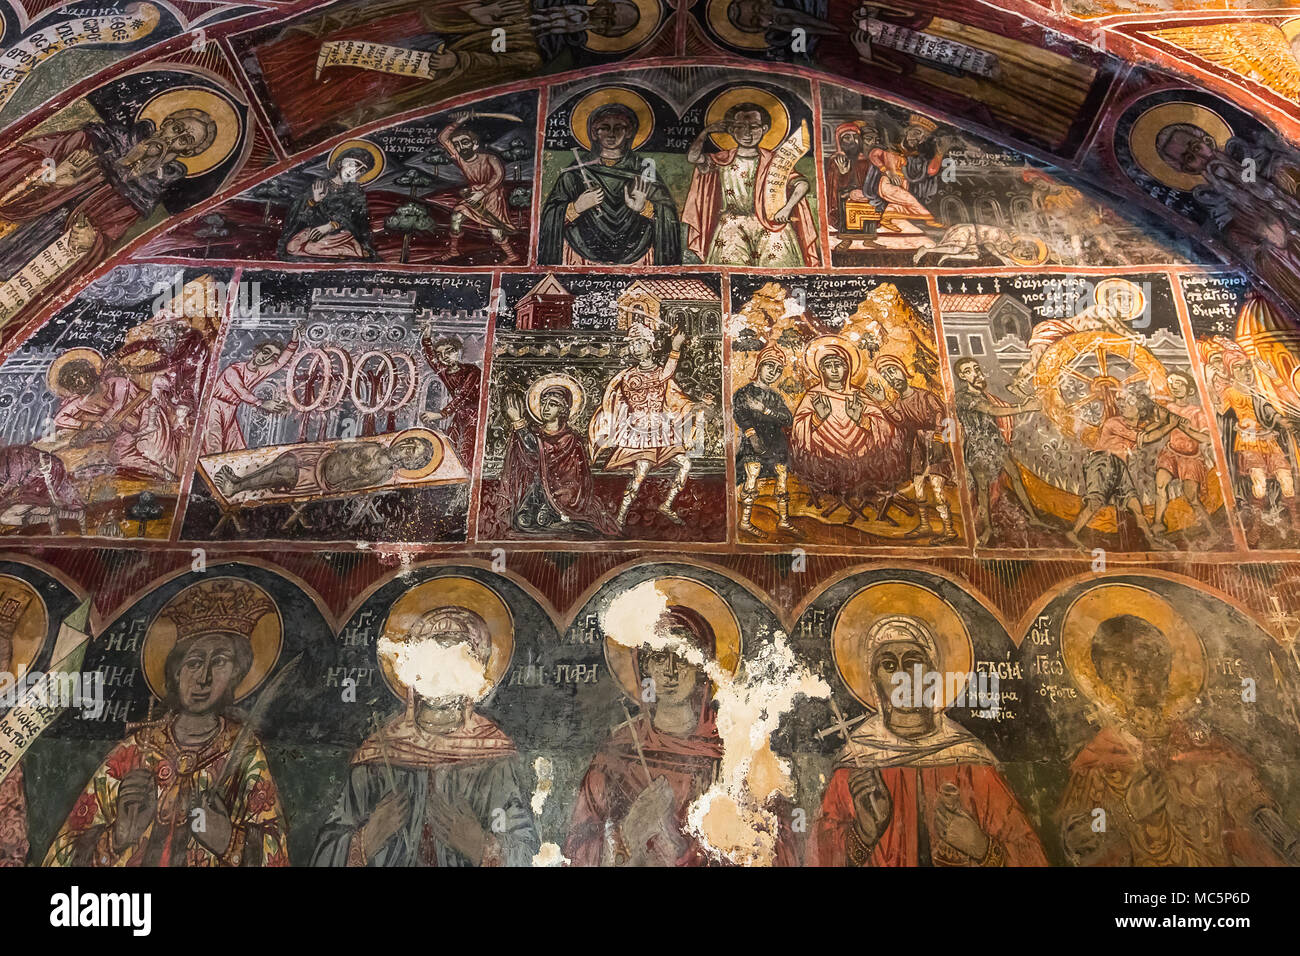 ITILO, Griechenland, 16. SEPTEMBER 2017: Fresken im Kloster von Dekoulon, 16. September 2017, in Itilo Peloponnes, Griechenland Stockfoto